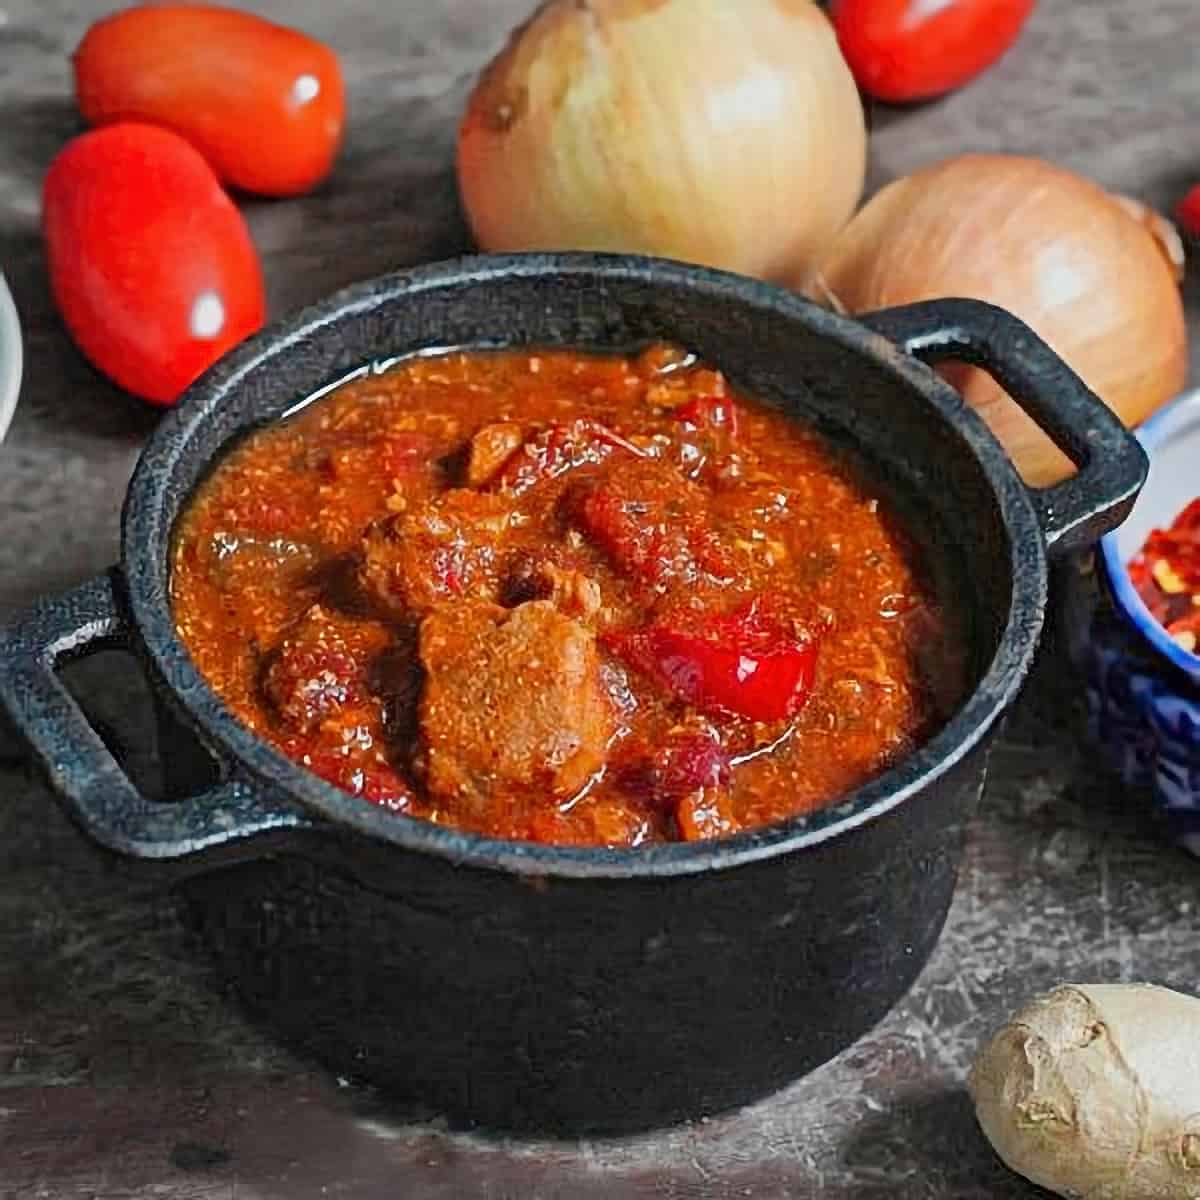 25 Best Chili Recipes - Pheasant Chili